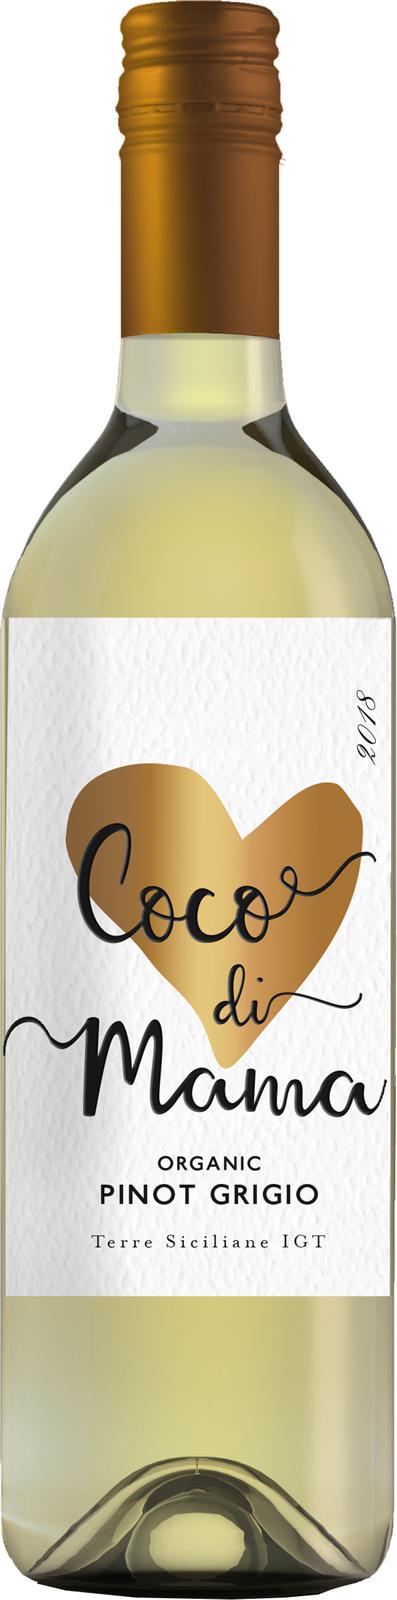 Coco di Mama Organic Pinot Grigio 2018 (Italy)